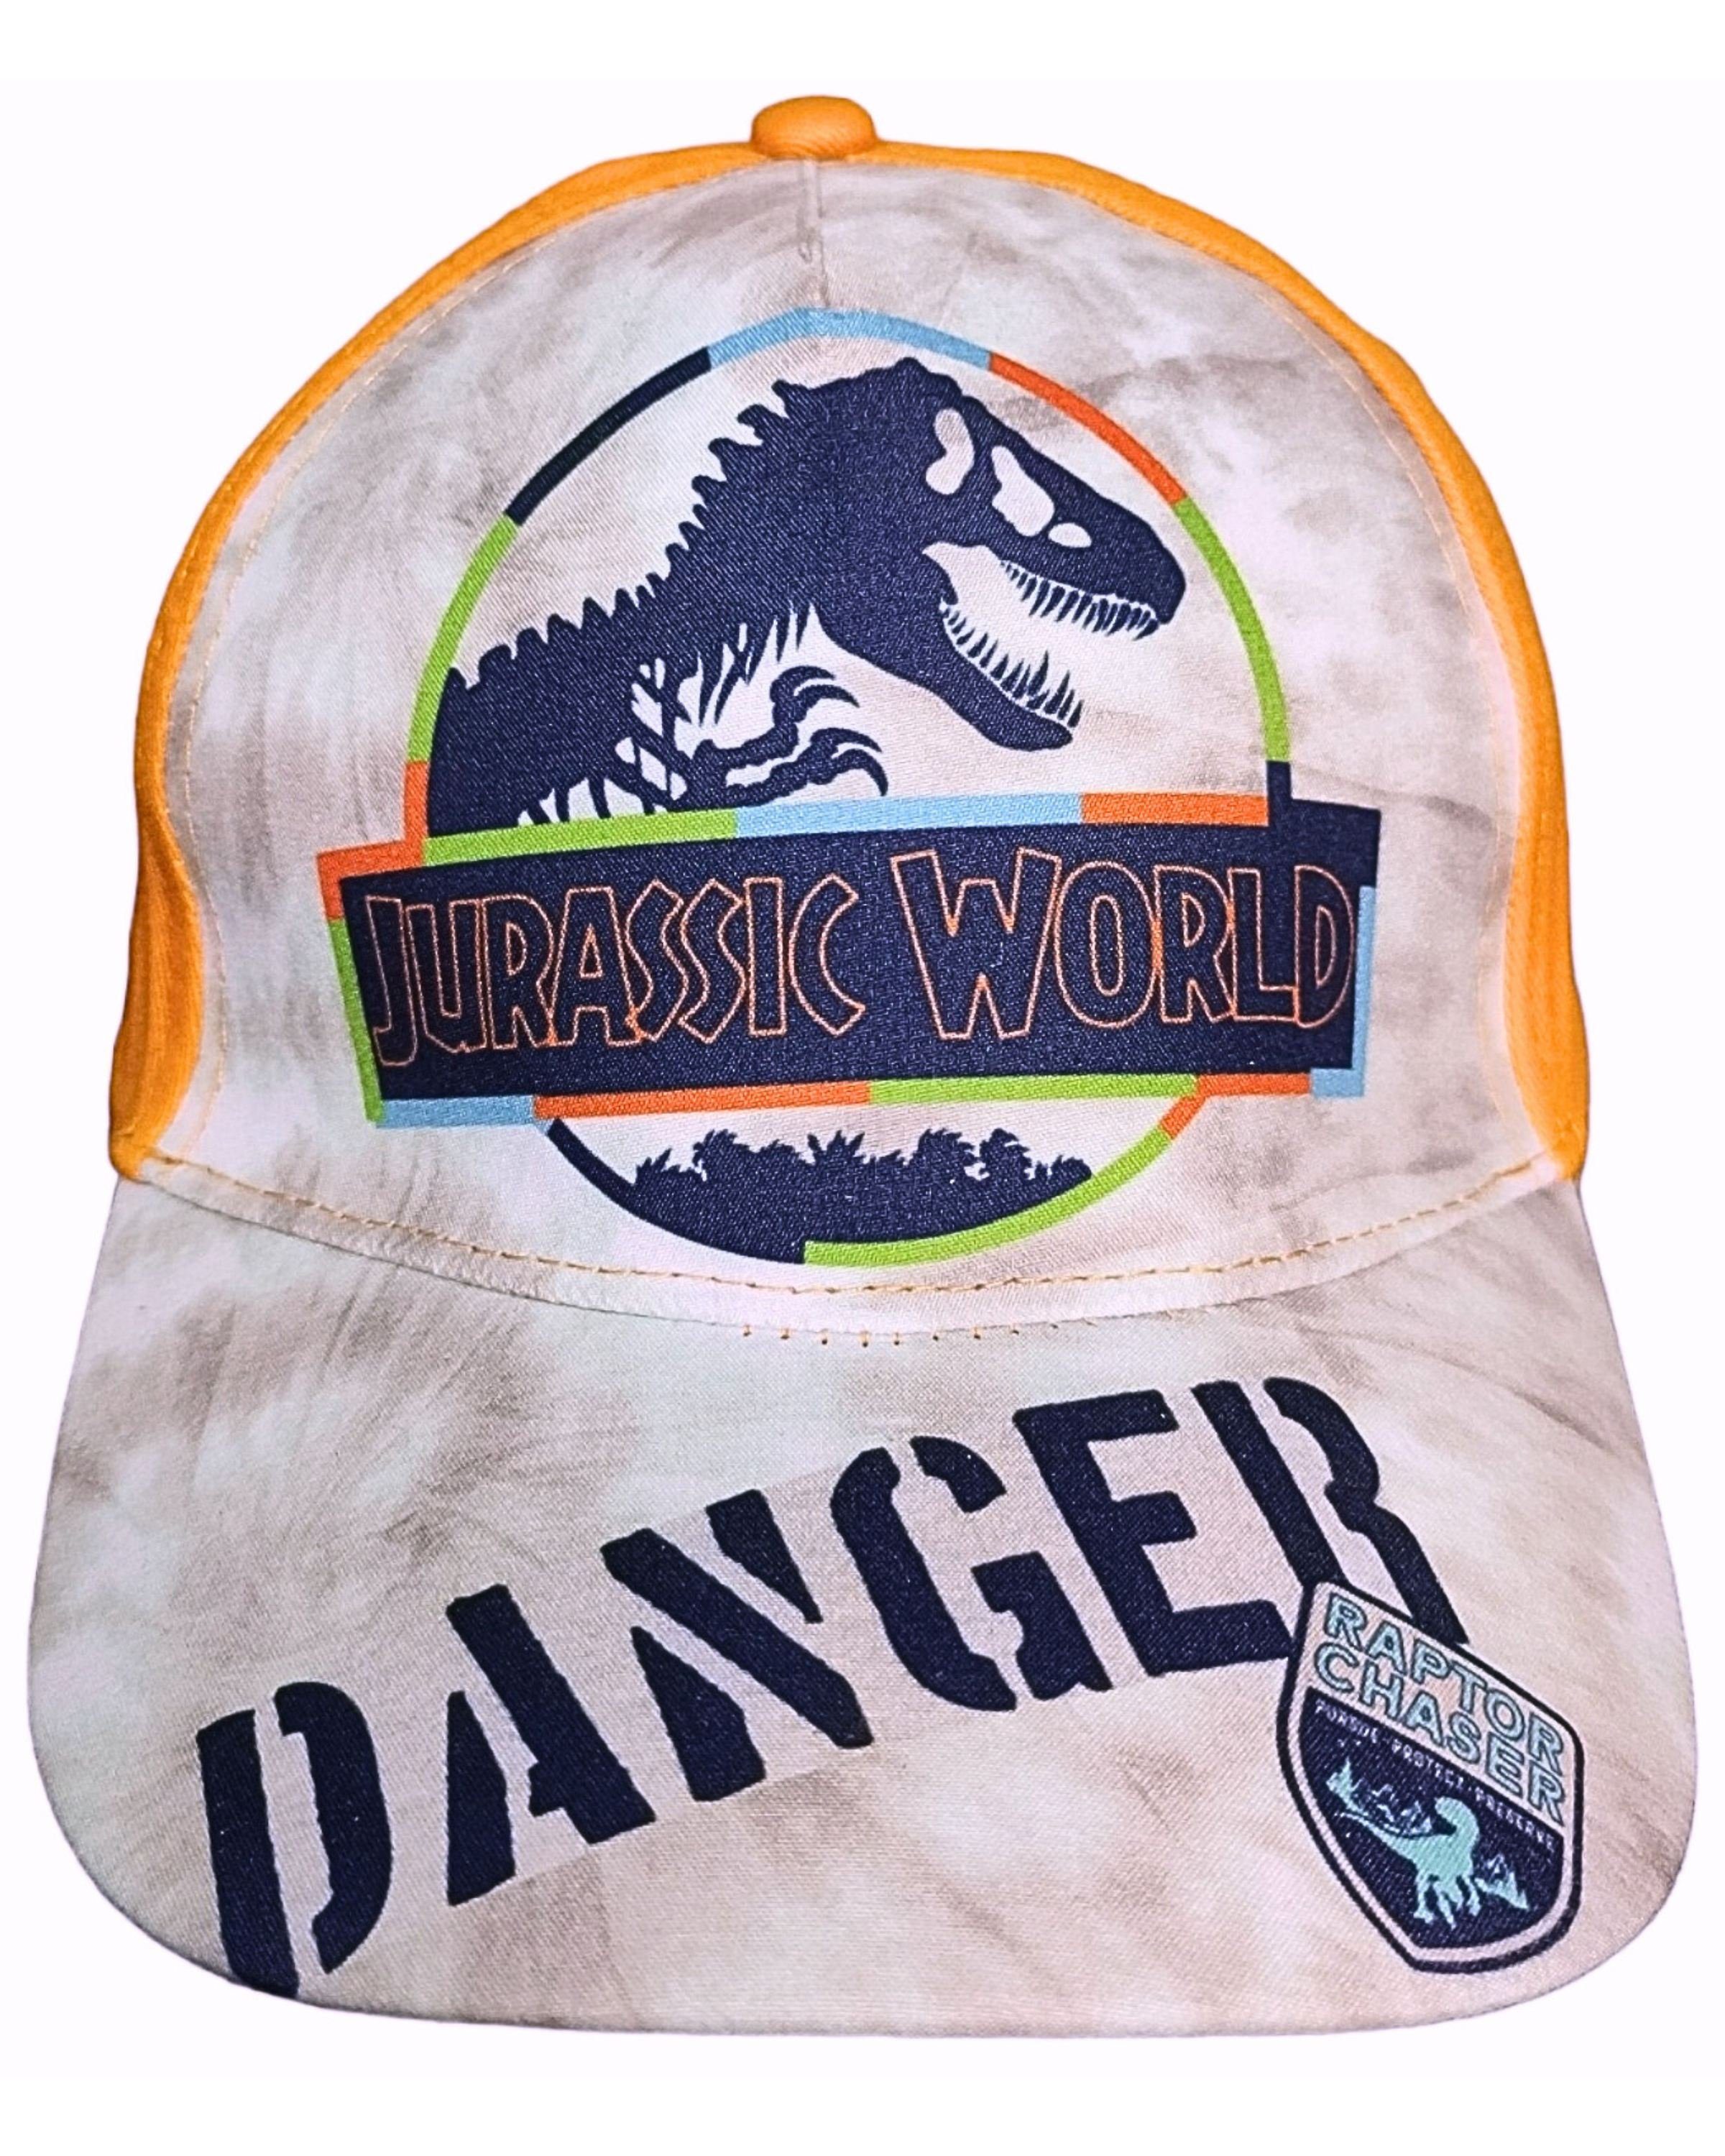 Jurassic World Baseball Cap CHASER RAPTOR cm Sommerkappe 52-54 Größe